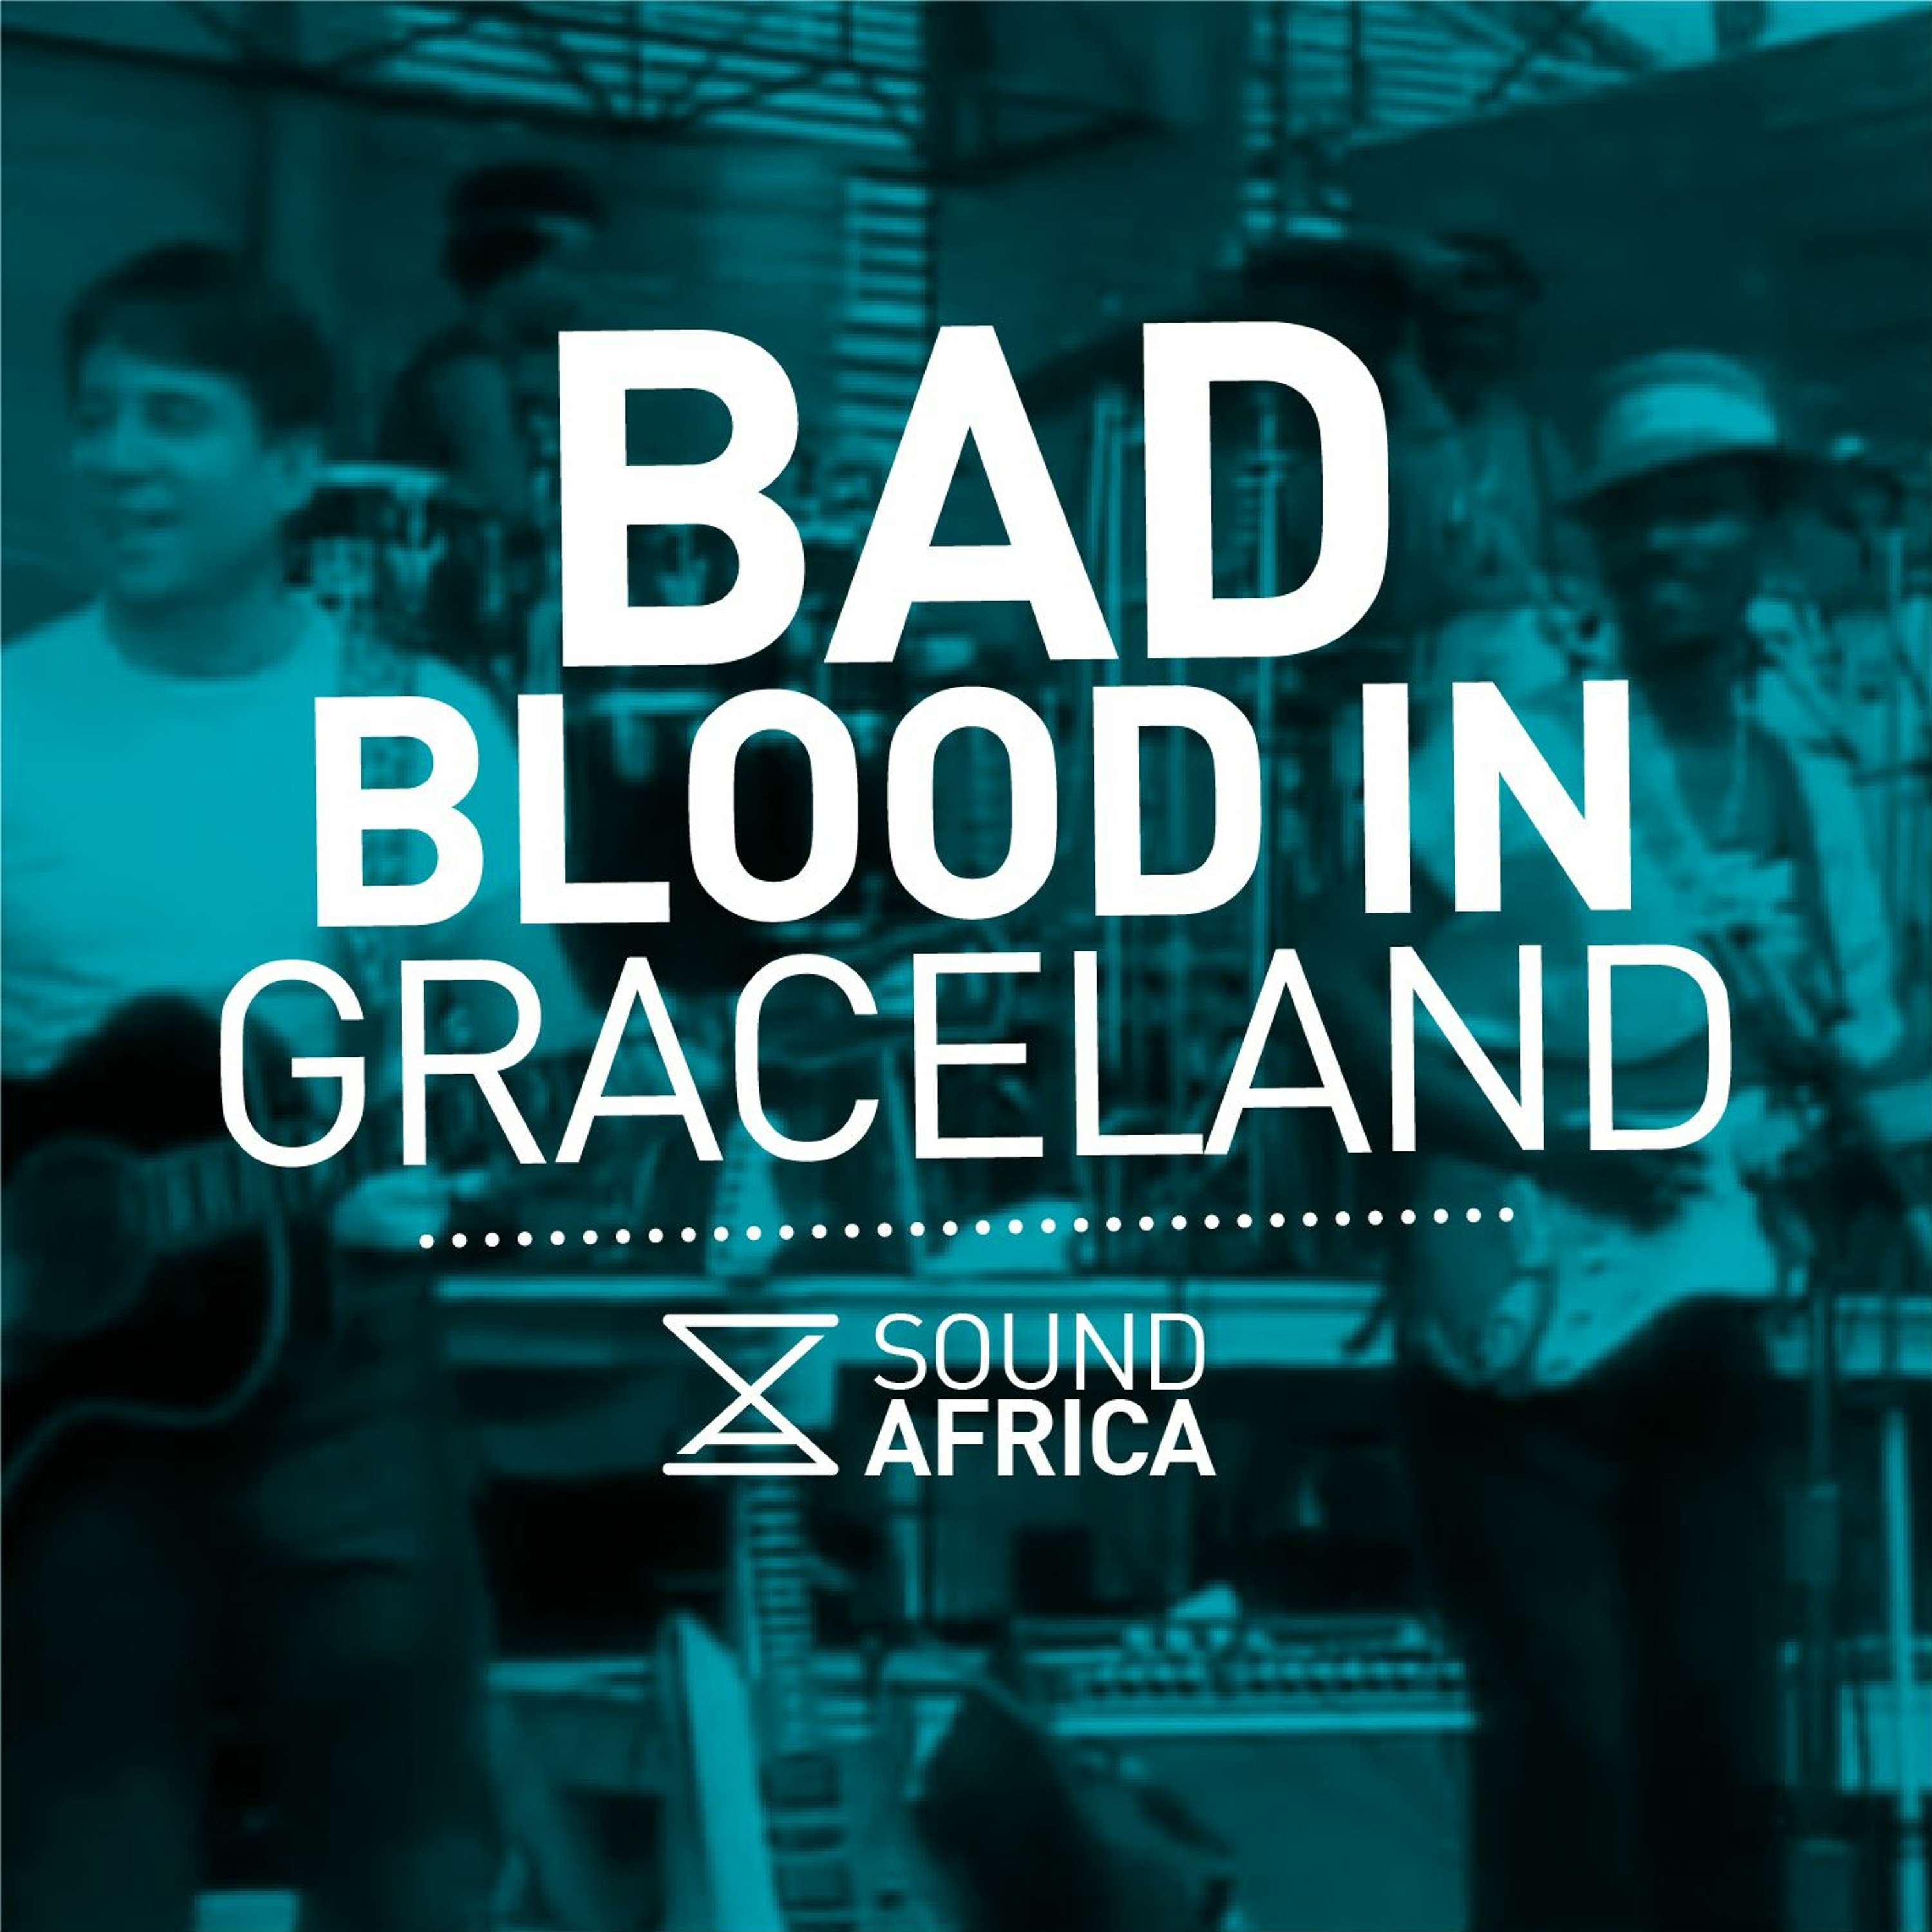 Bad Blood in Graceland